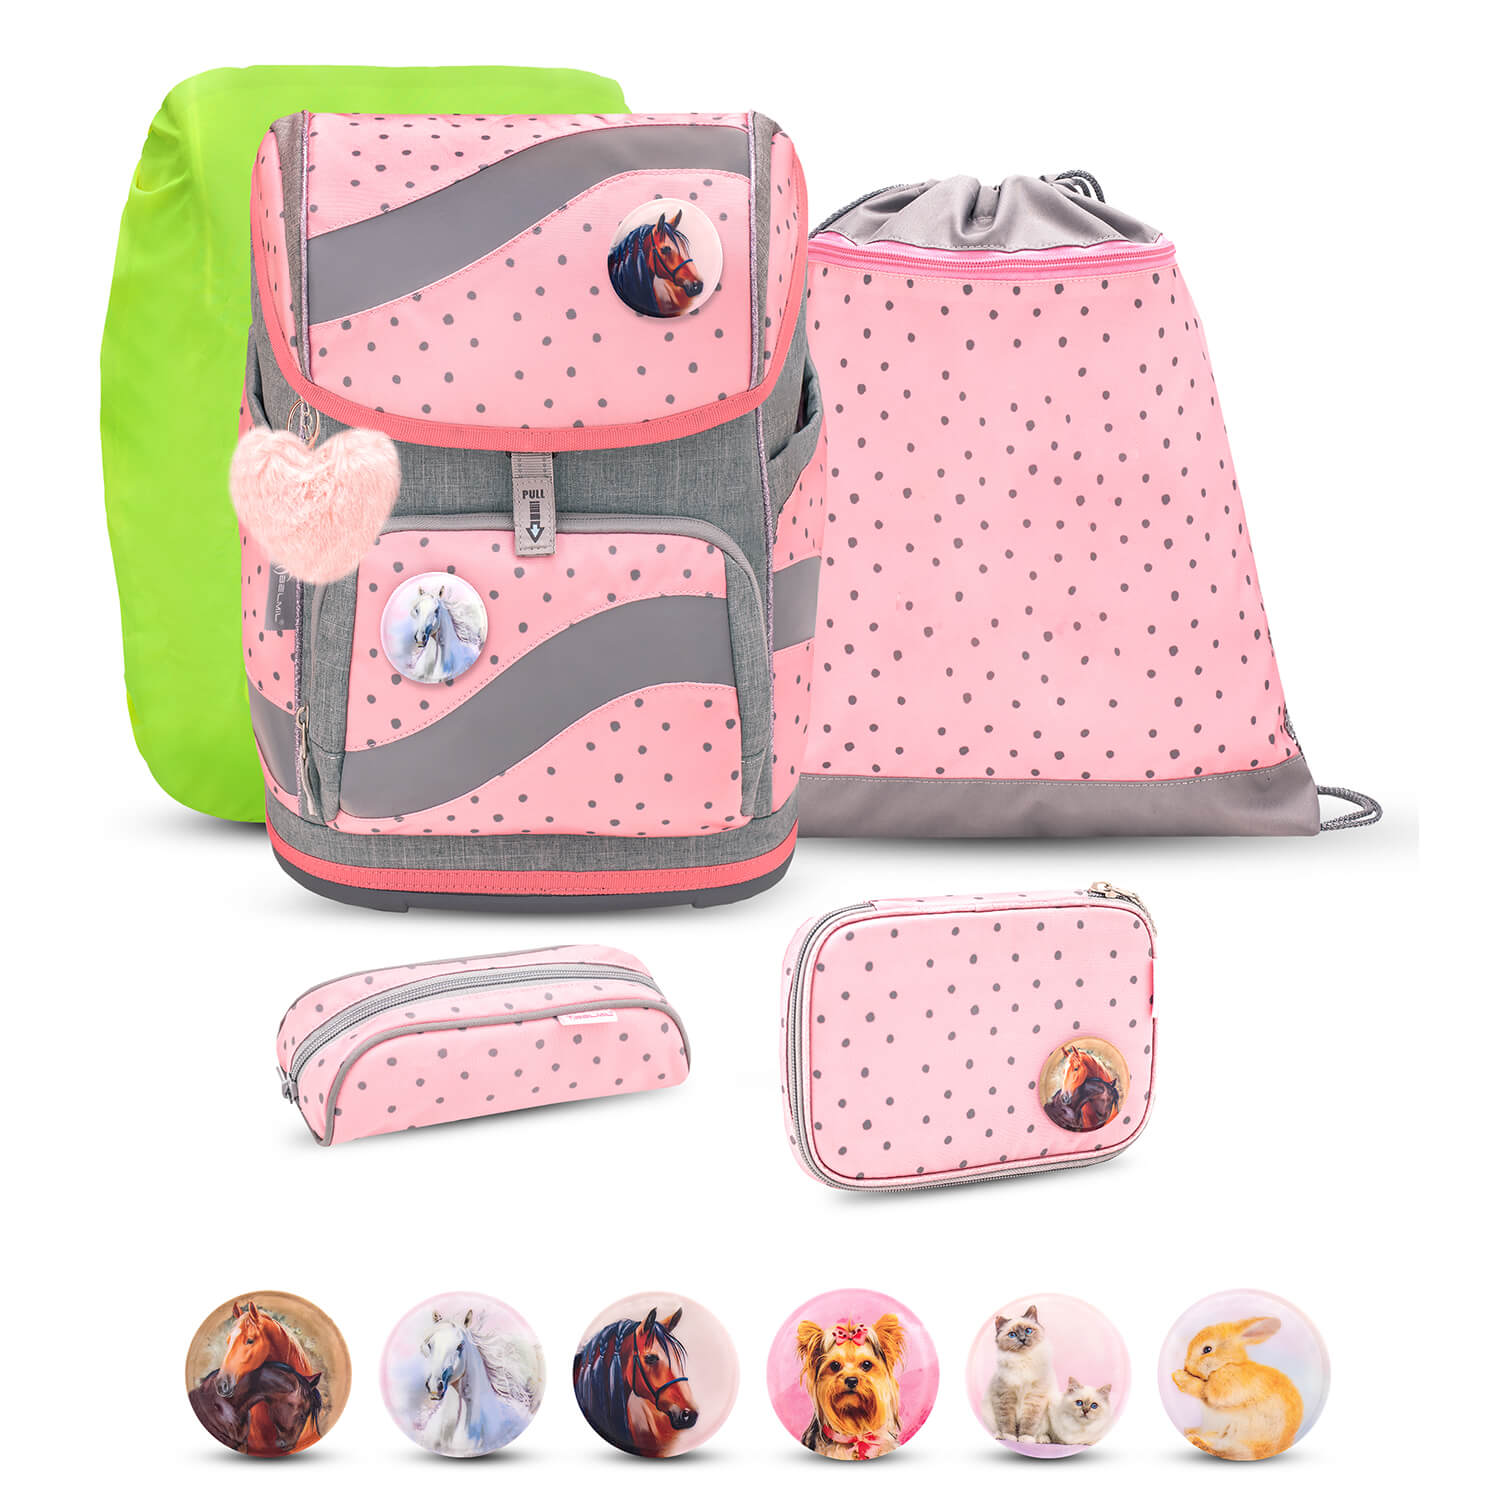 Smarty Pink Dots 2 schoolbag set 6 pcs